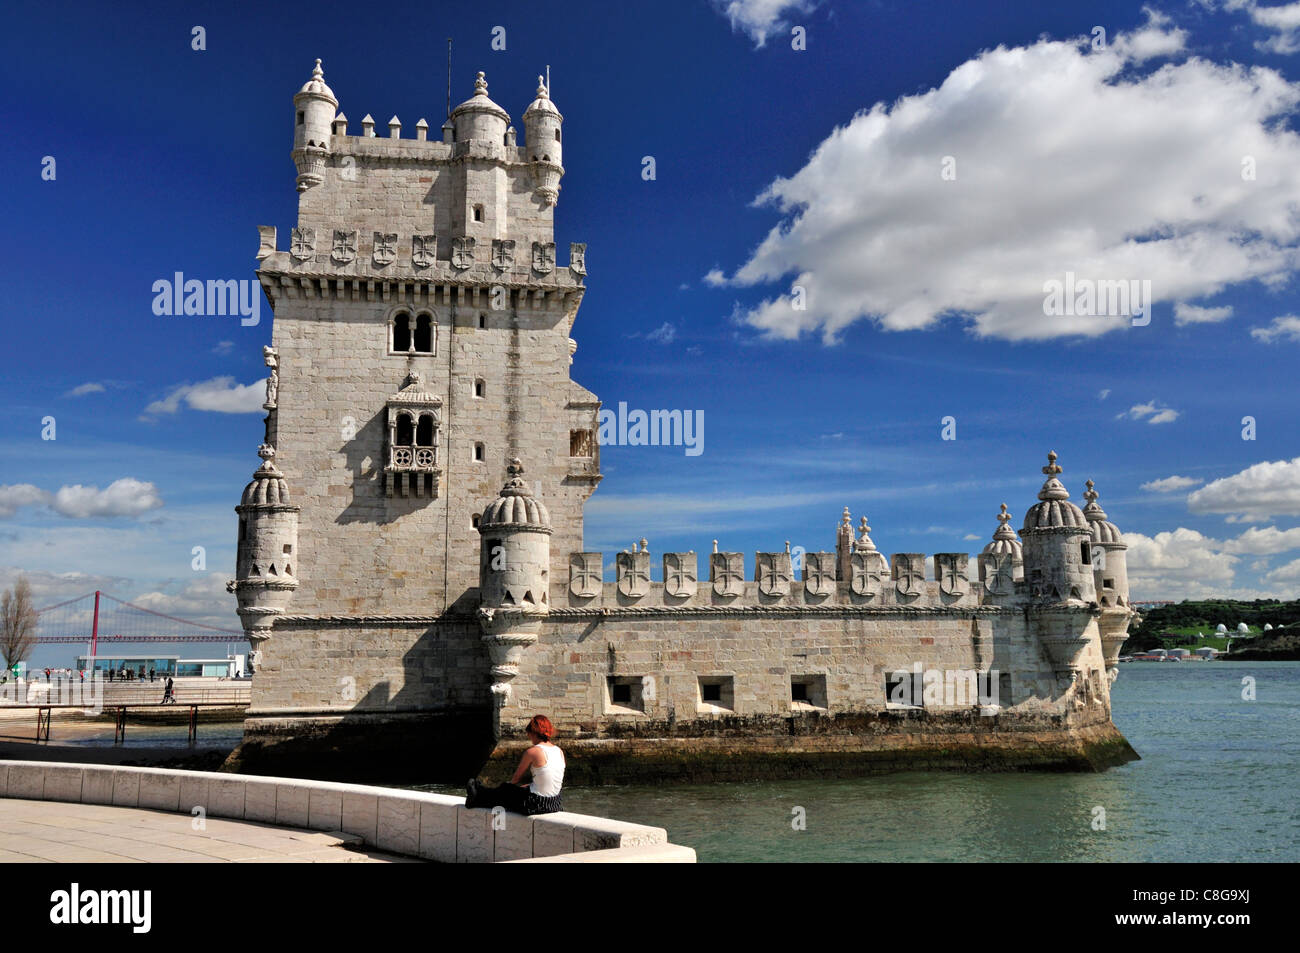 Portugal, Lisbonne manuélin : Tour de Belém en marge du Tage Banque D'Images